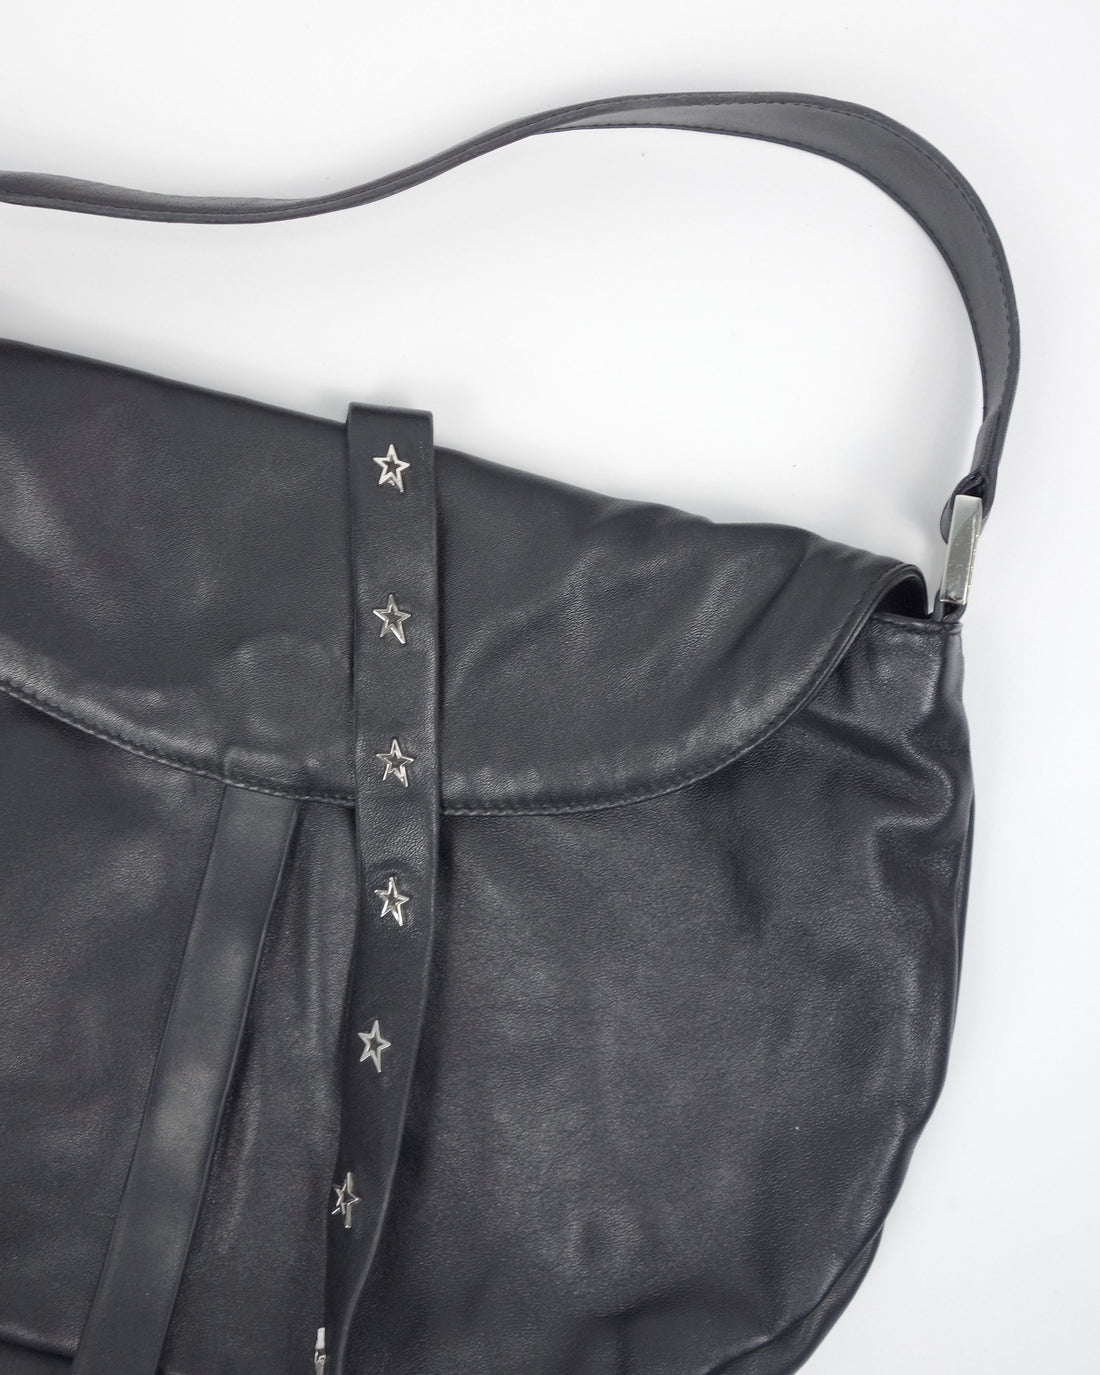 Mugler Black Leather Soft Bag 2000's